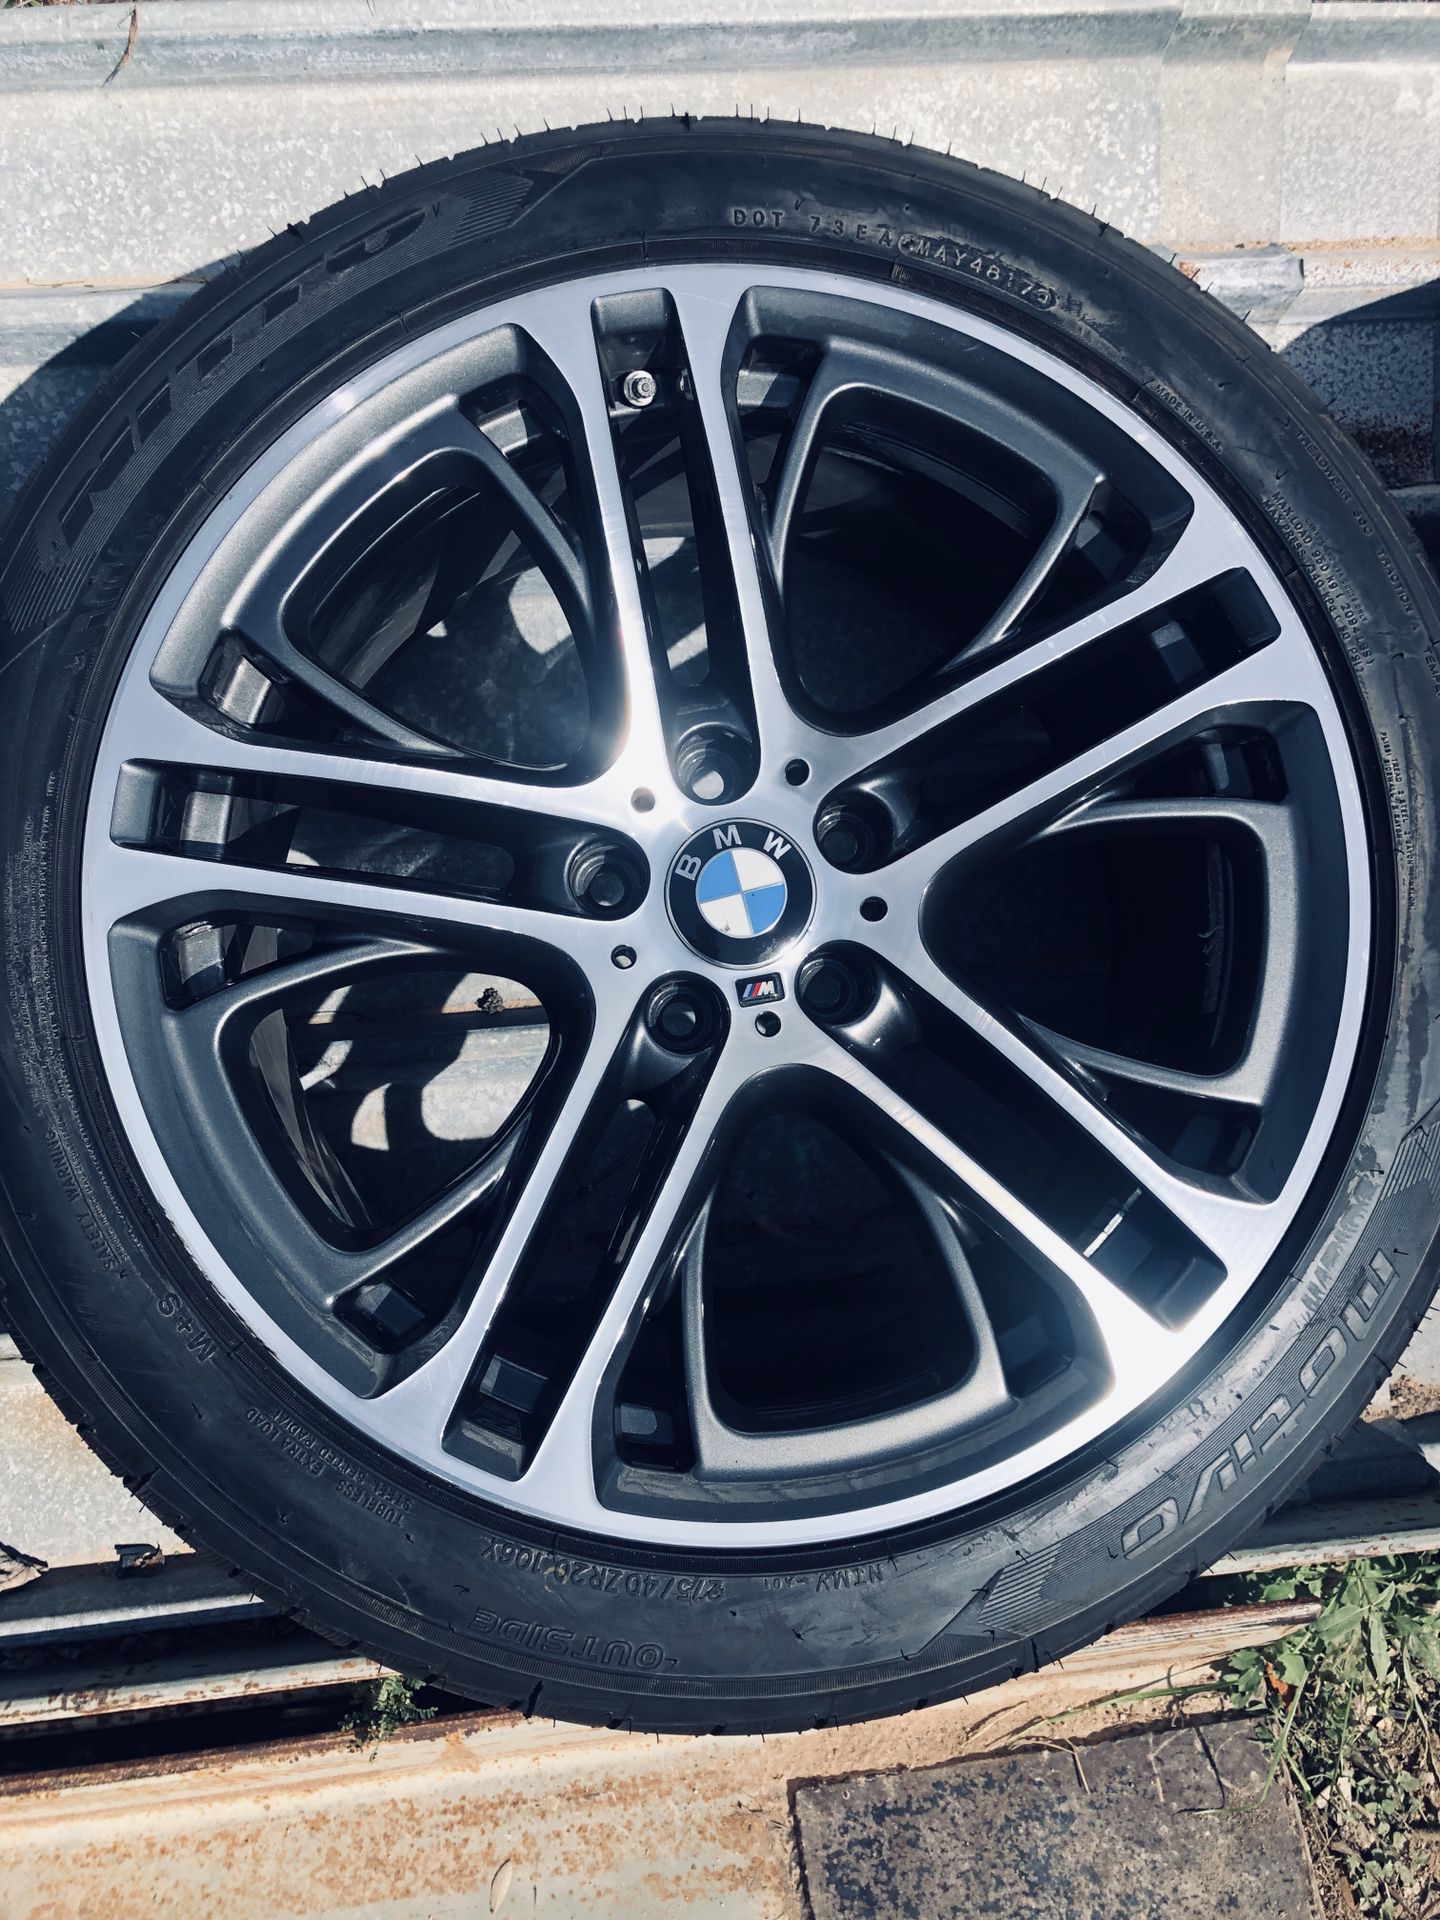 BMW X4 310M wheels